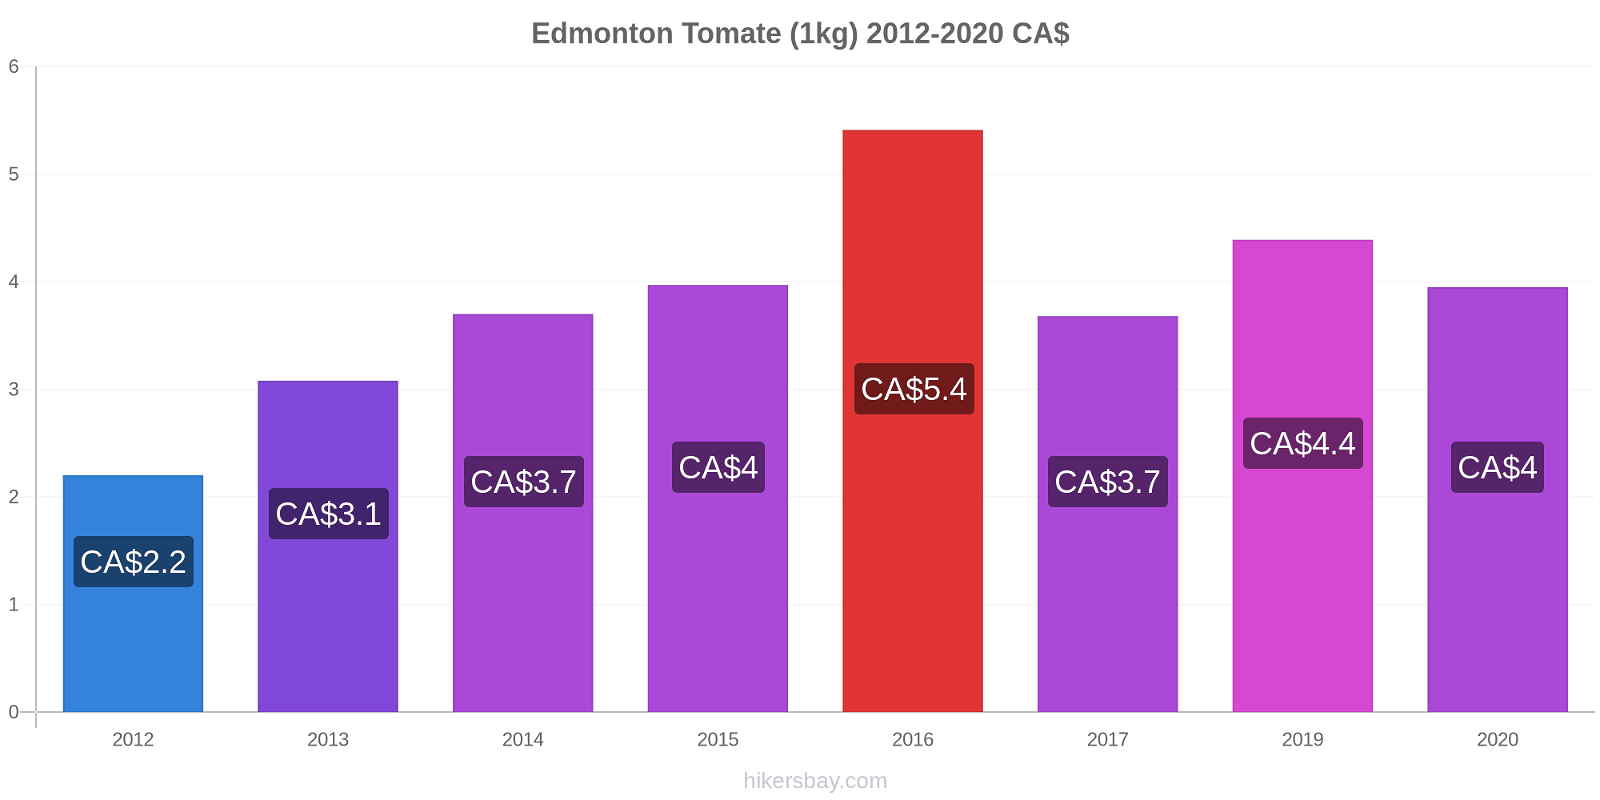 Edmonton cambios de precios Tomate (1kg) hikersbay.com